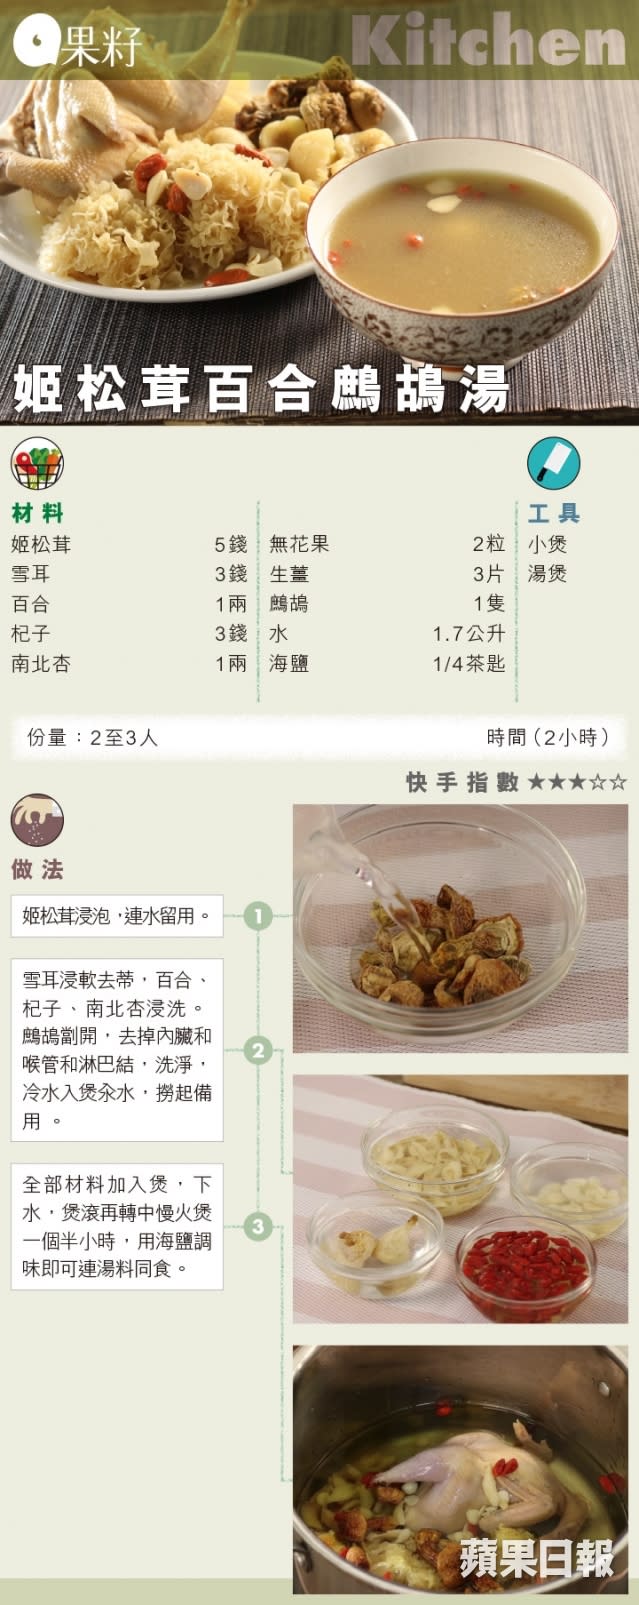 姬松茸百合鷓鴣湯食譜卡